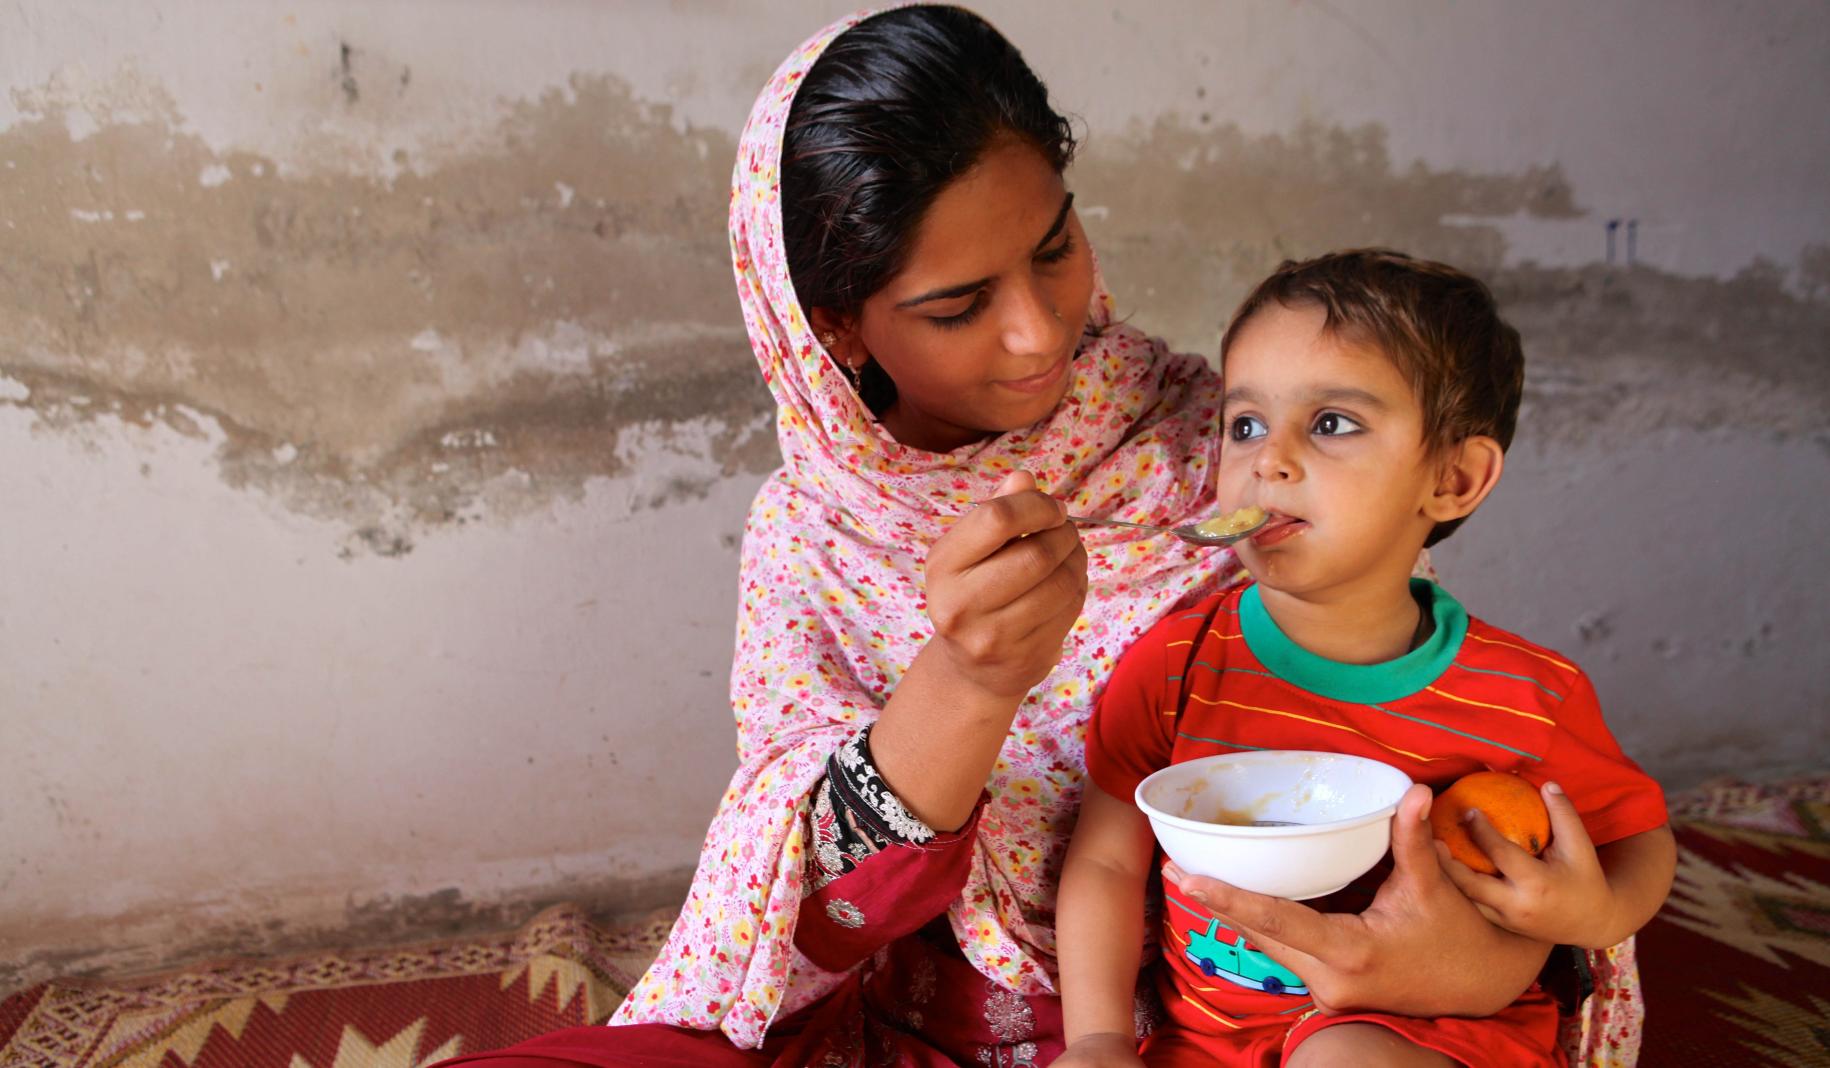 Una mujer joven sostiene a un niño en su regazo mientras lo alimenta.